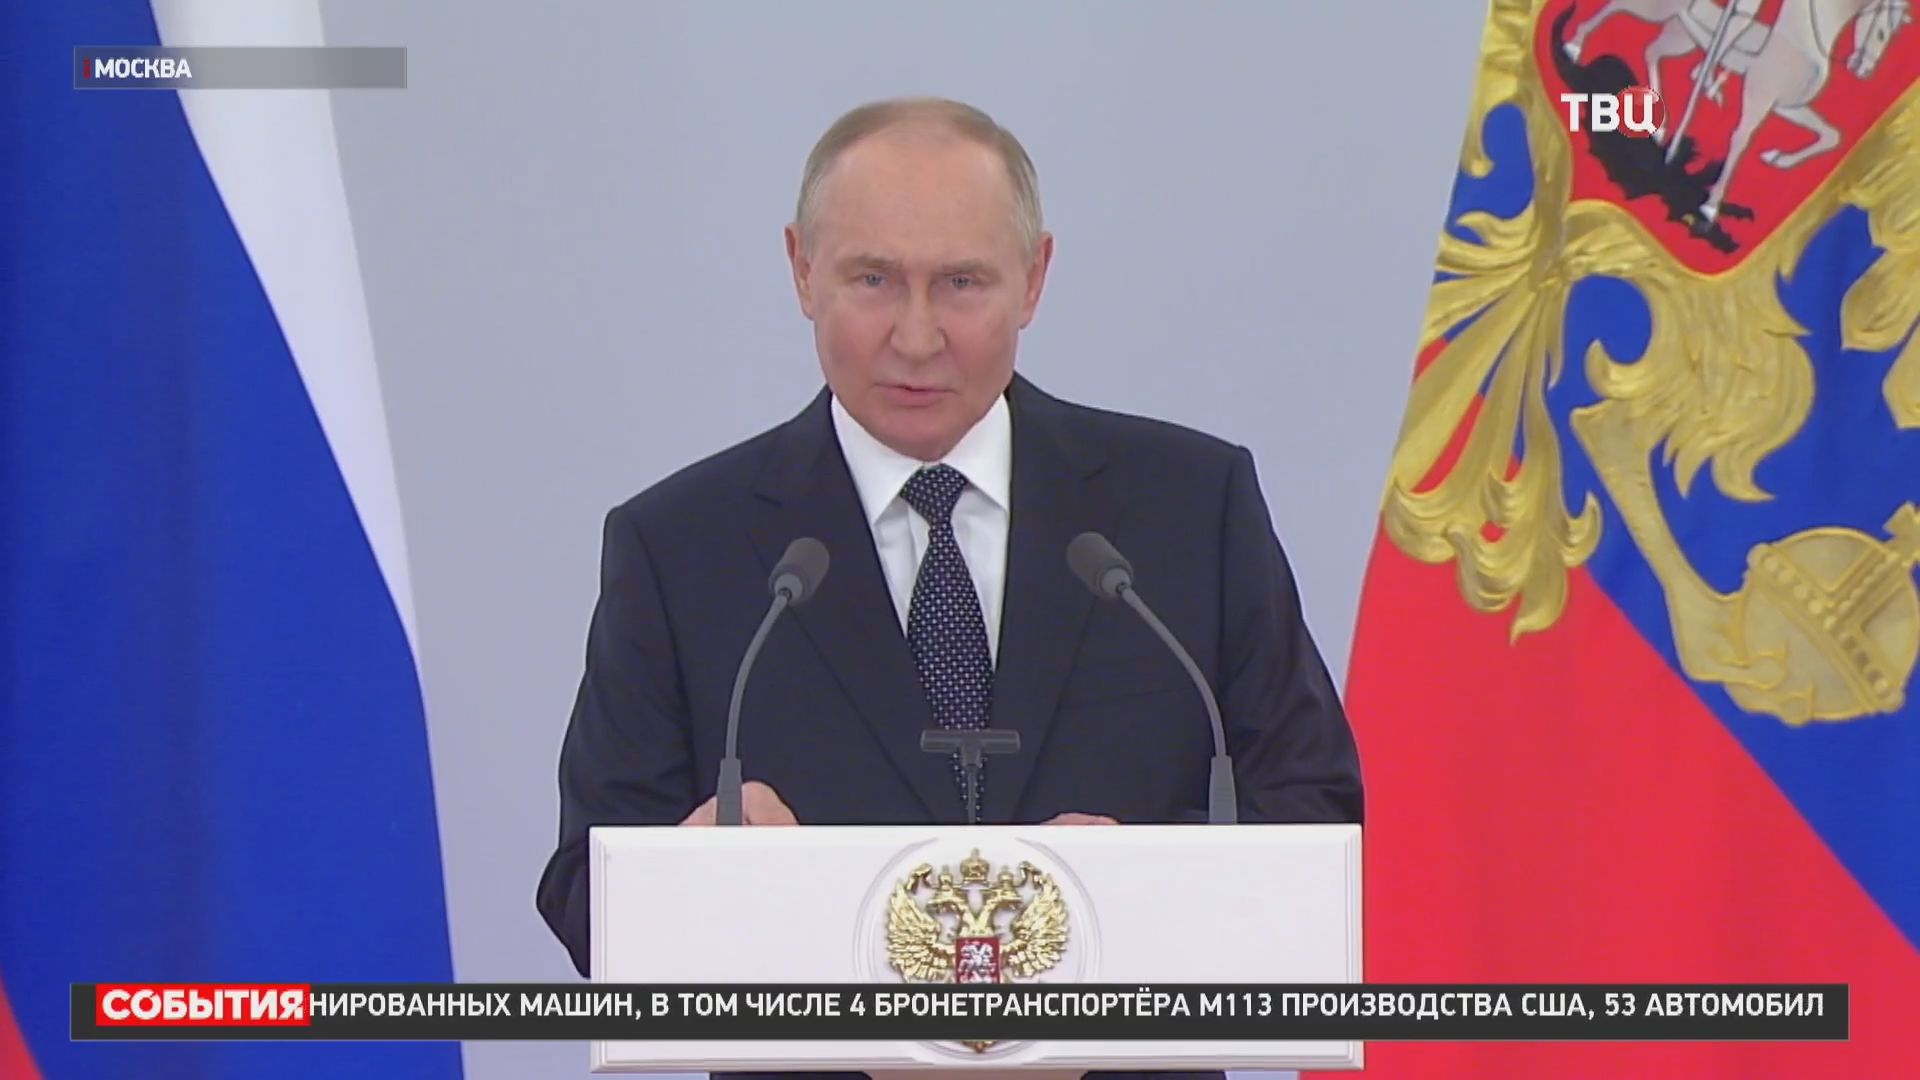 Путин: Россия готова к широкому обсуждению безопасности Евразии / События на ТВЦ